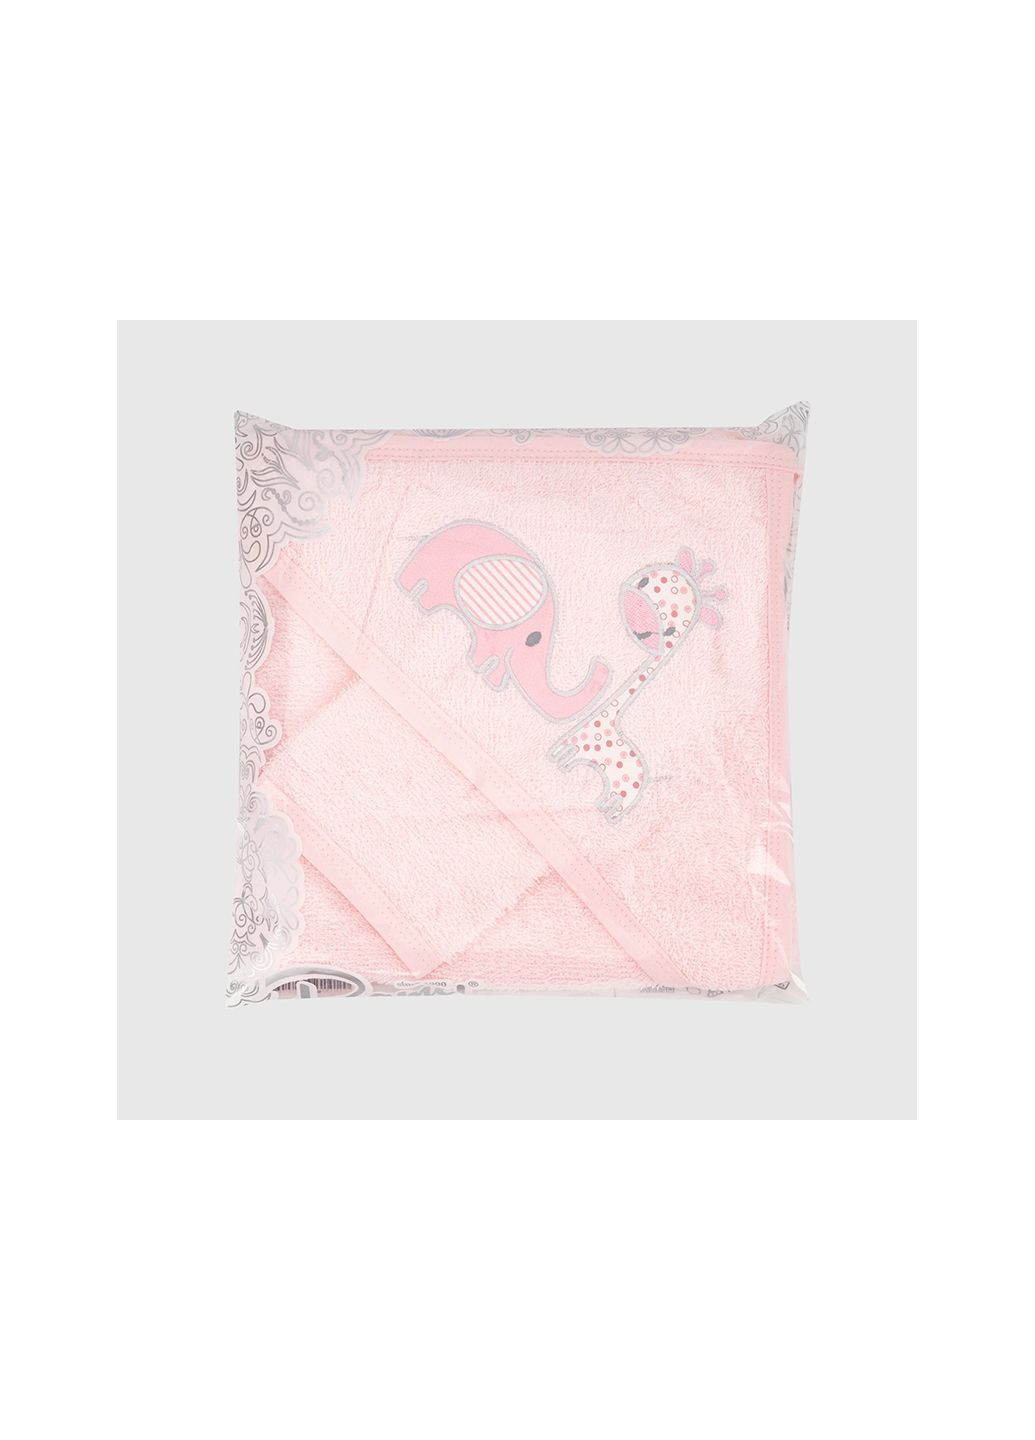 Ramel полотенце розовый производство - Турция